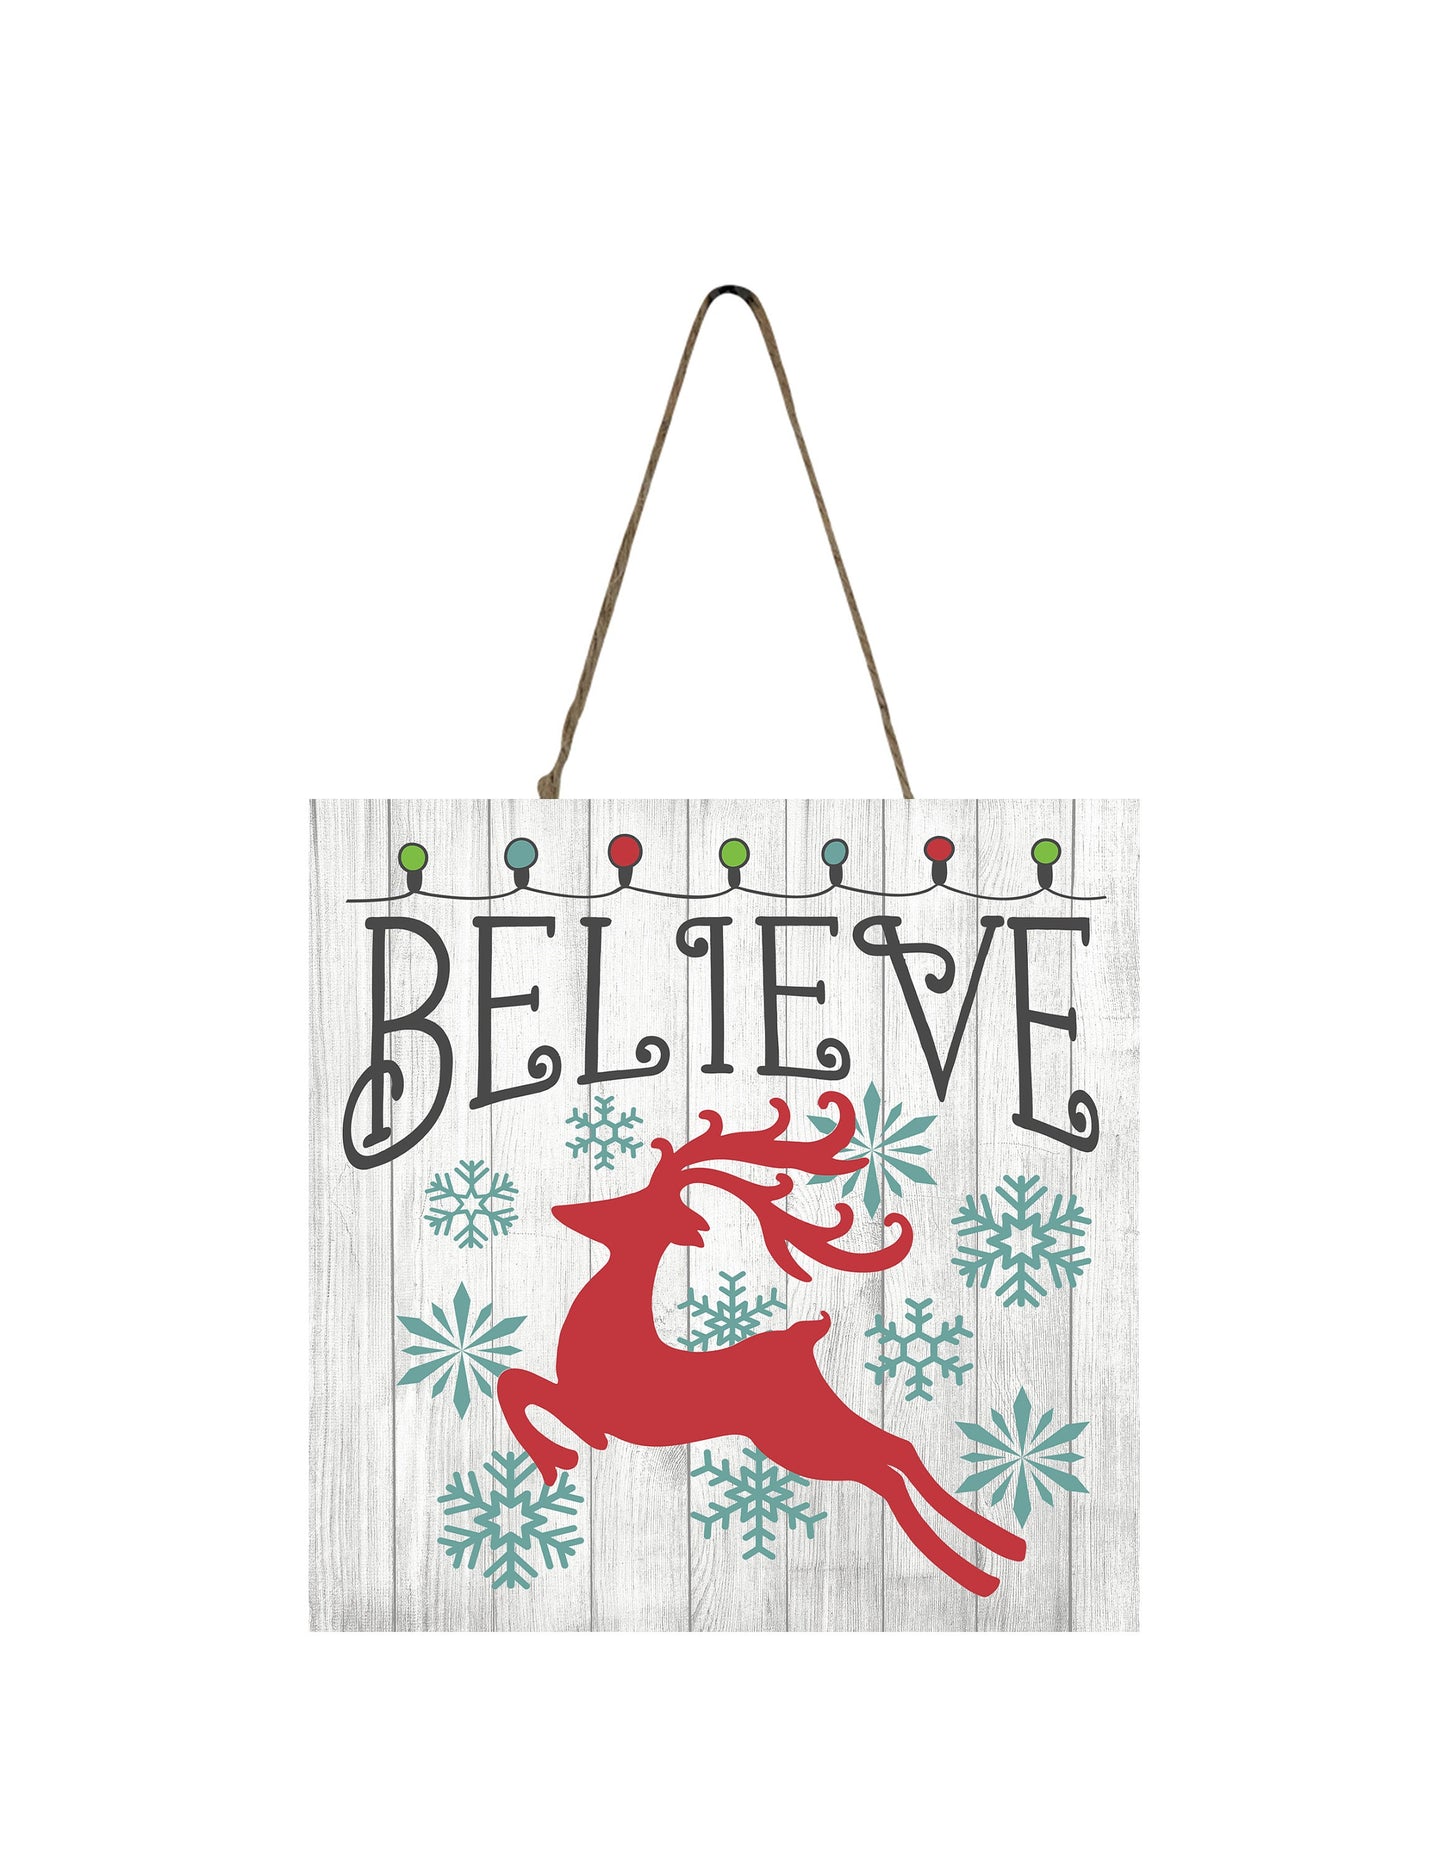 Red Reindeer Believe Printed Handmade Wood Christmas Ornament Mini Sign